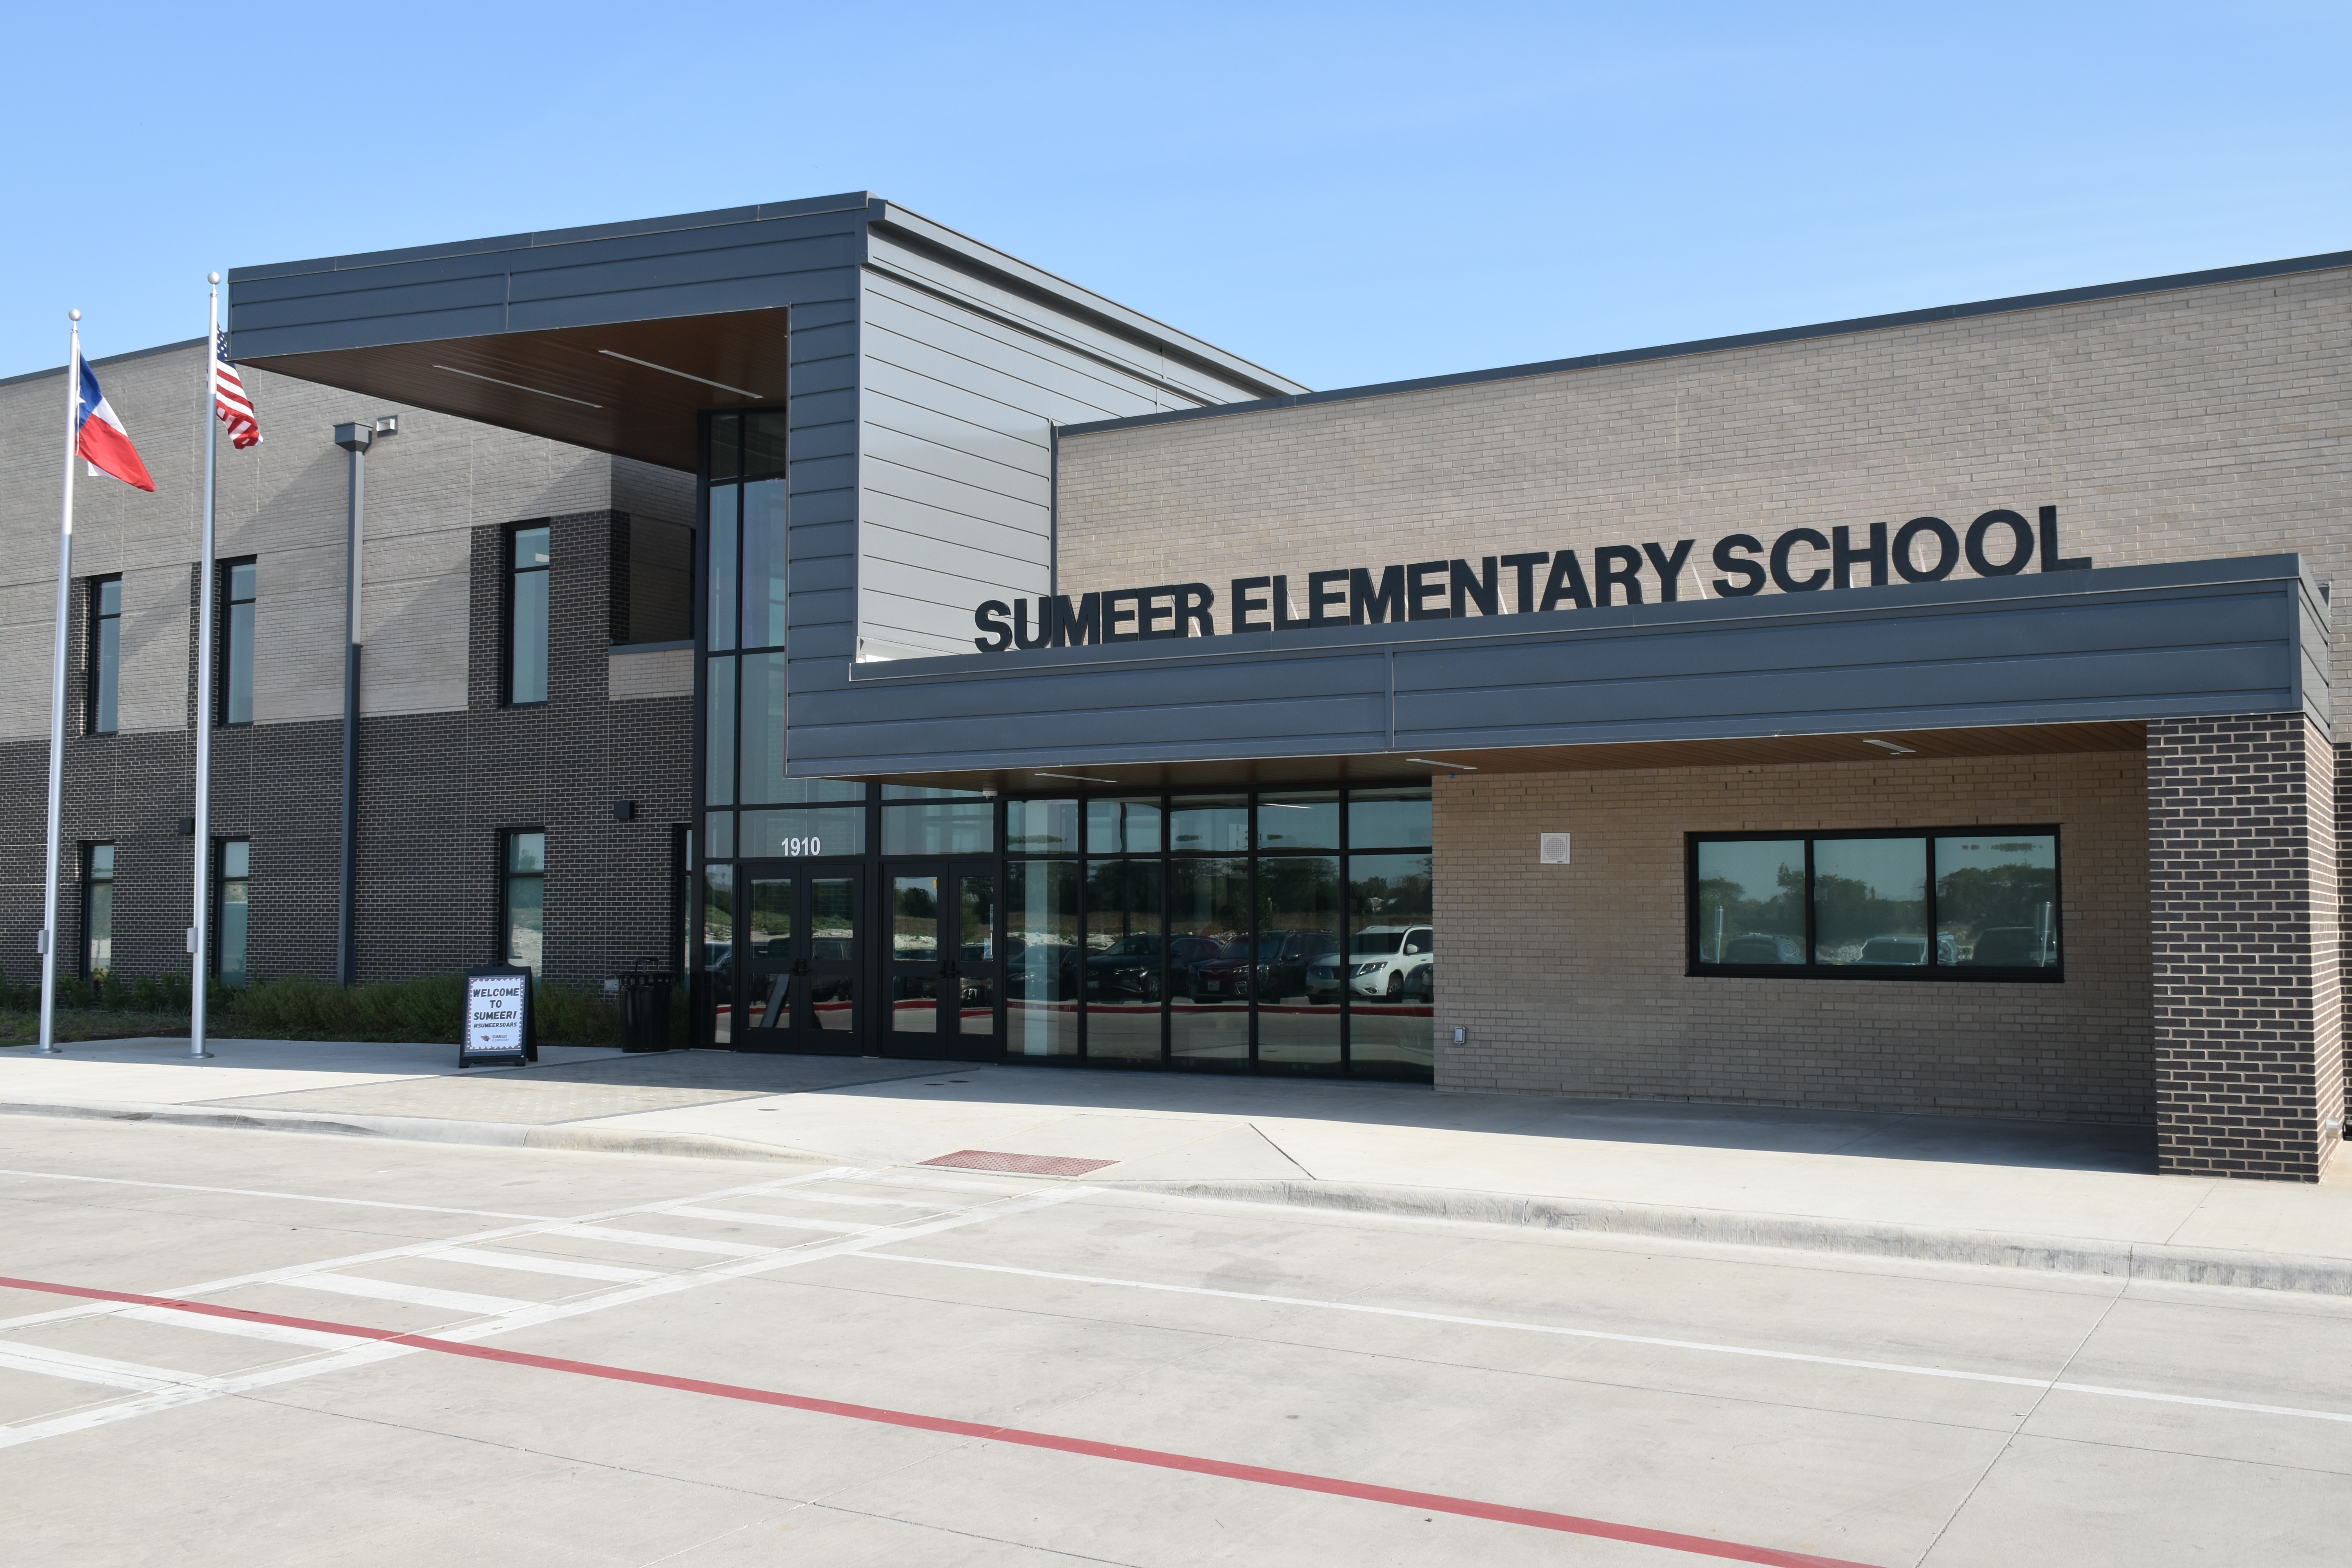 Sumeer Elementary School